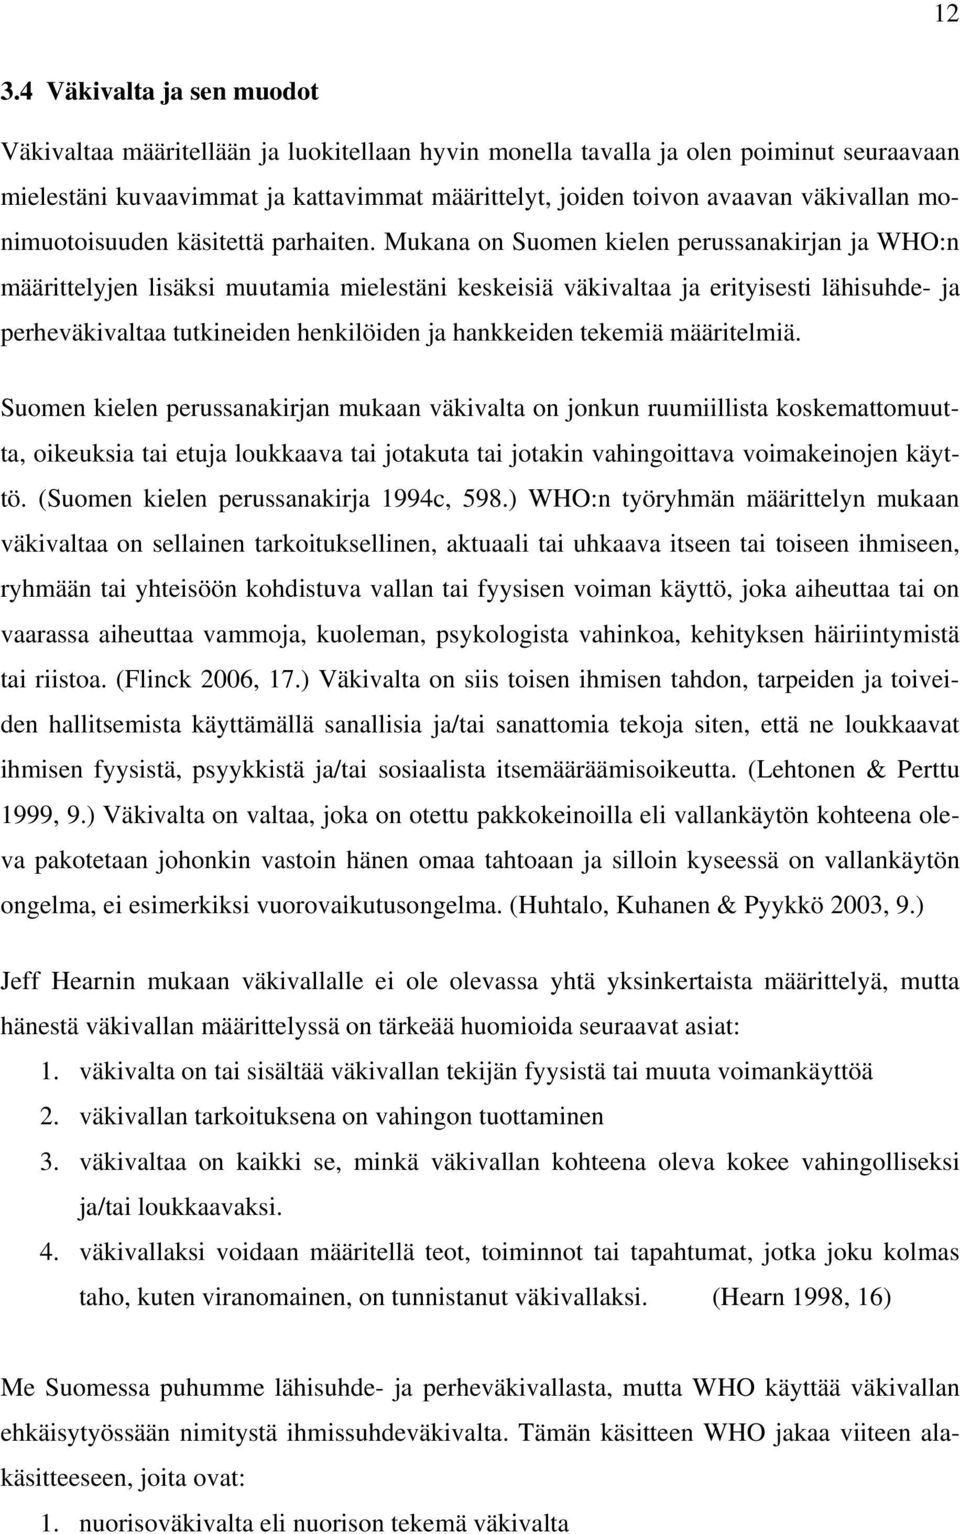 Mukana on Suomen kielen perussanakirjan ja WHO:n määrittelyjen lisäksi muutamia mielestäni keskeisiä väkivaltaa ja erityisesti lähisuhde- ja perheväkivaltaa tutkineiden henkilöiden ja hankkeiden